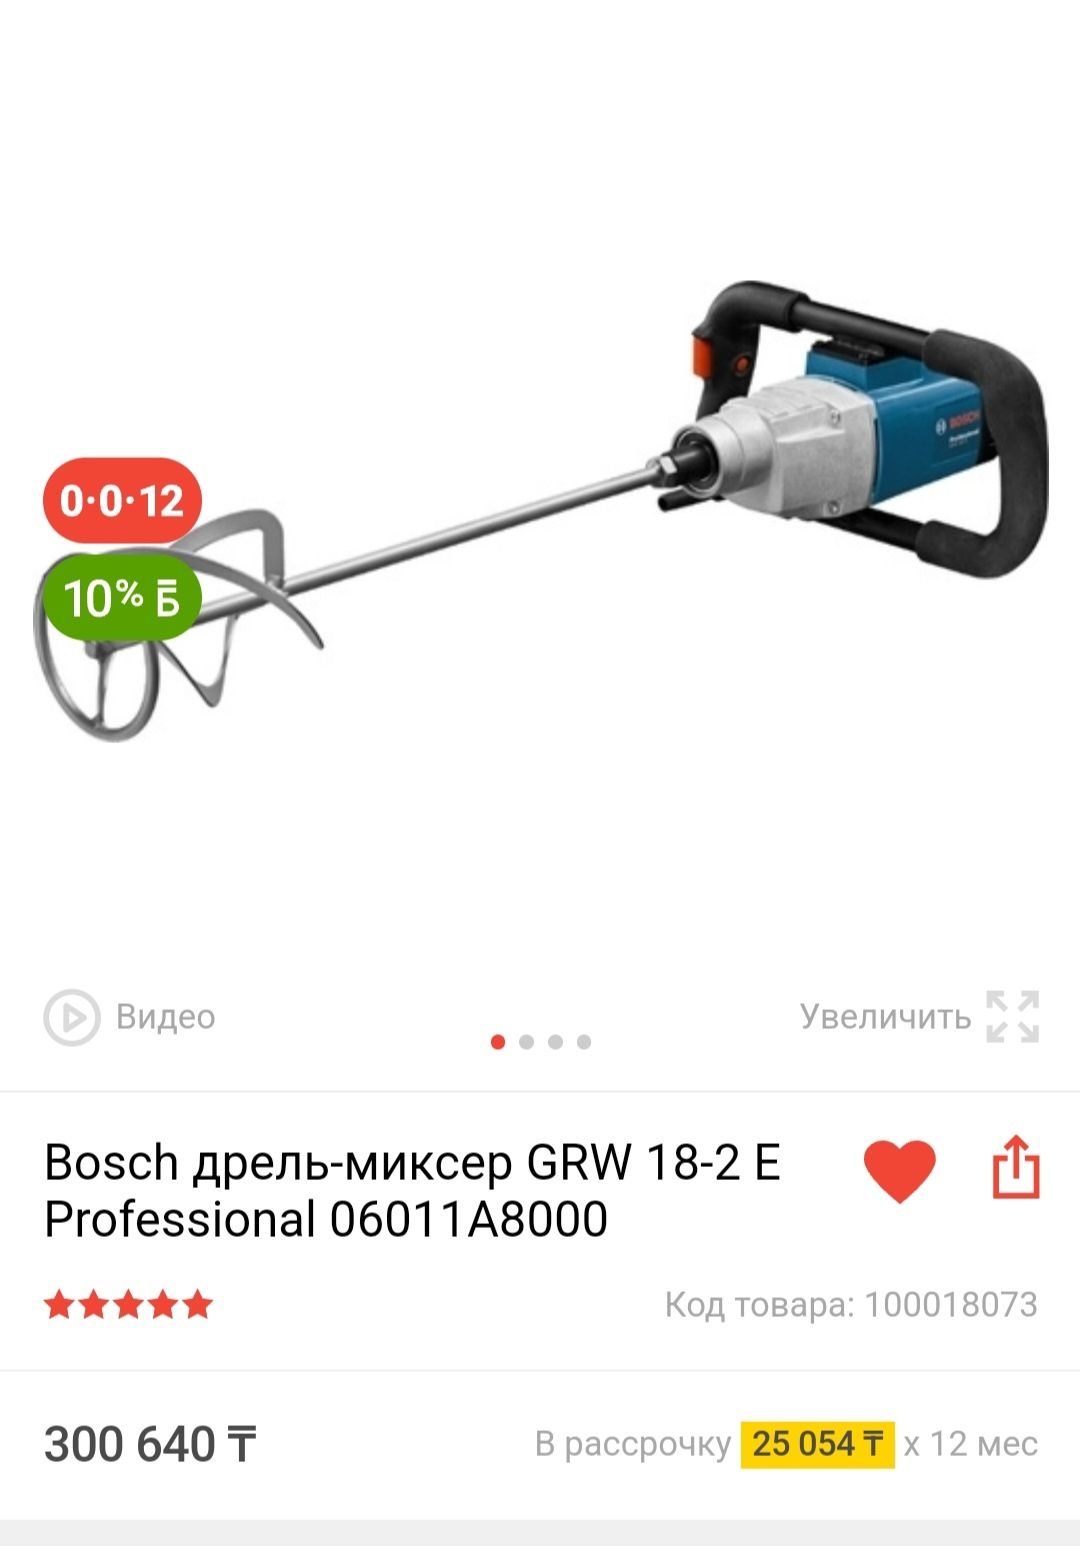 Bosch дрель-миксер GRW 18-2 E Professional  ТОРГ ЕСТЬ.